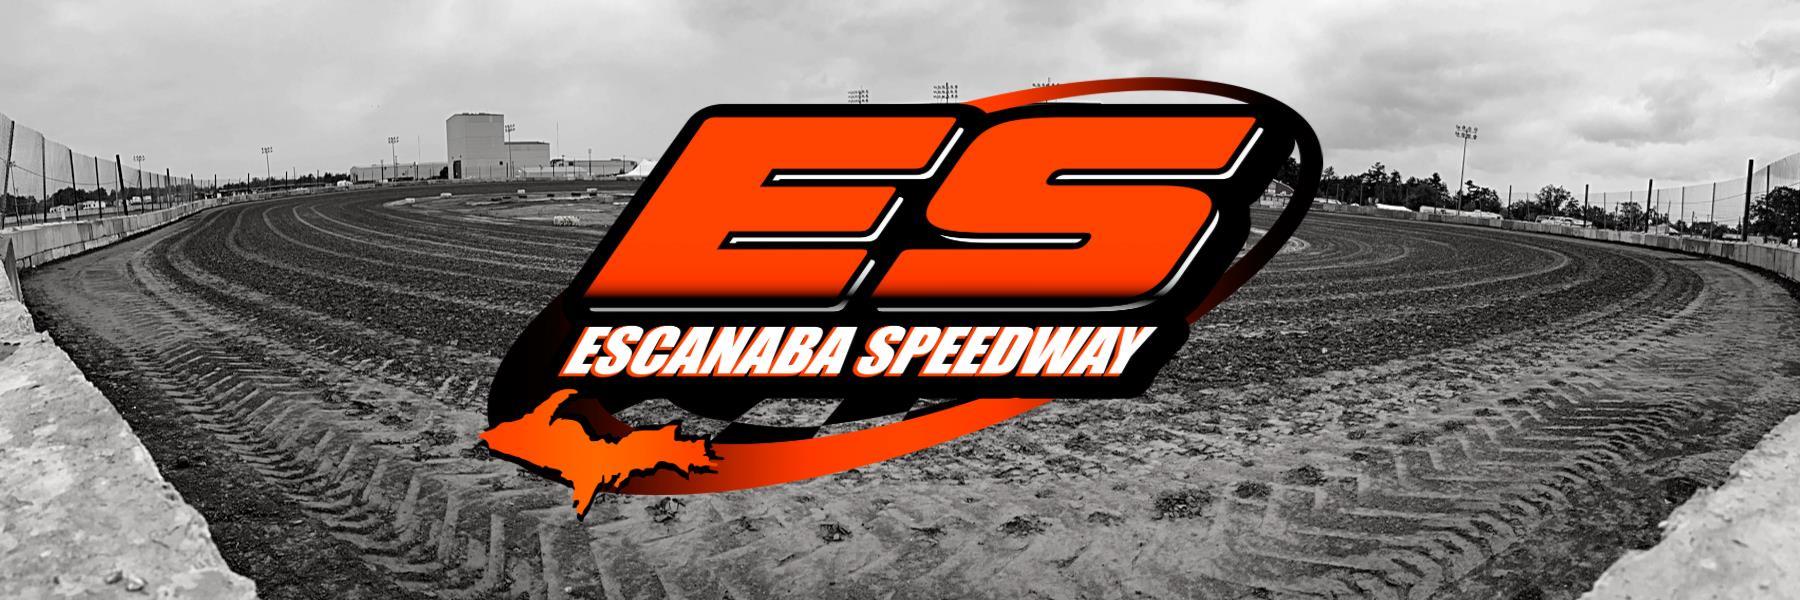 7/17/2021 - Escanaba Speedway